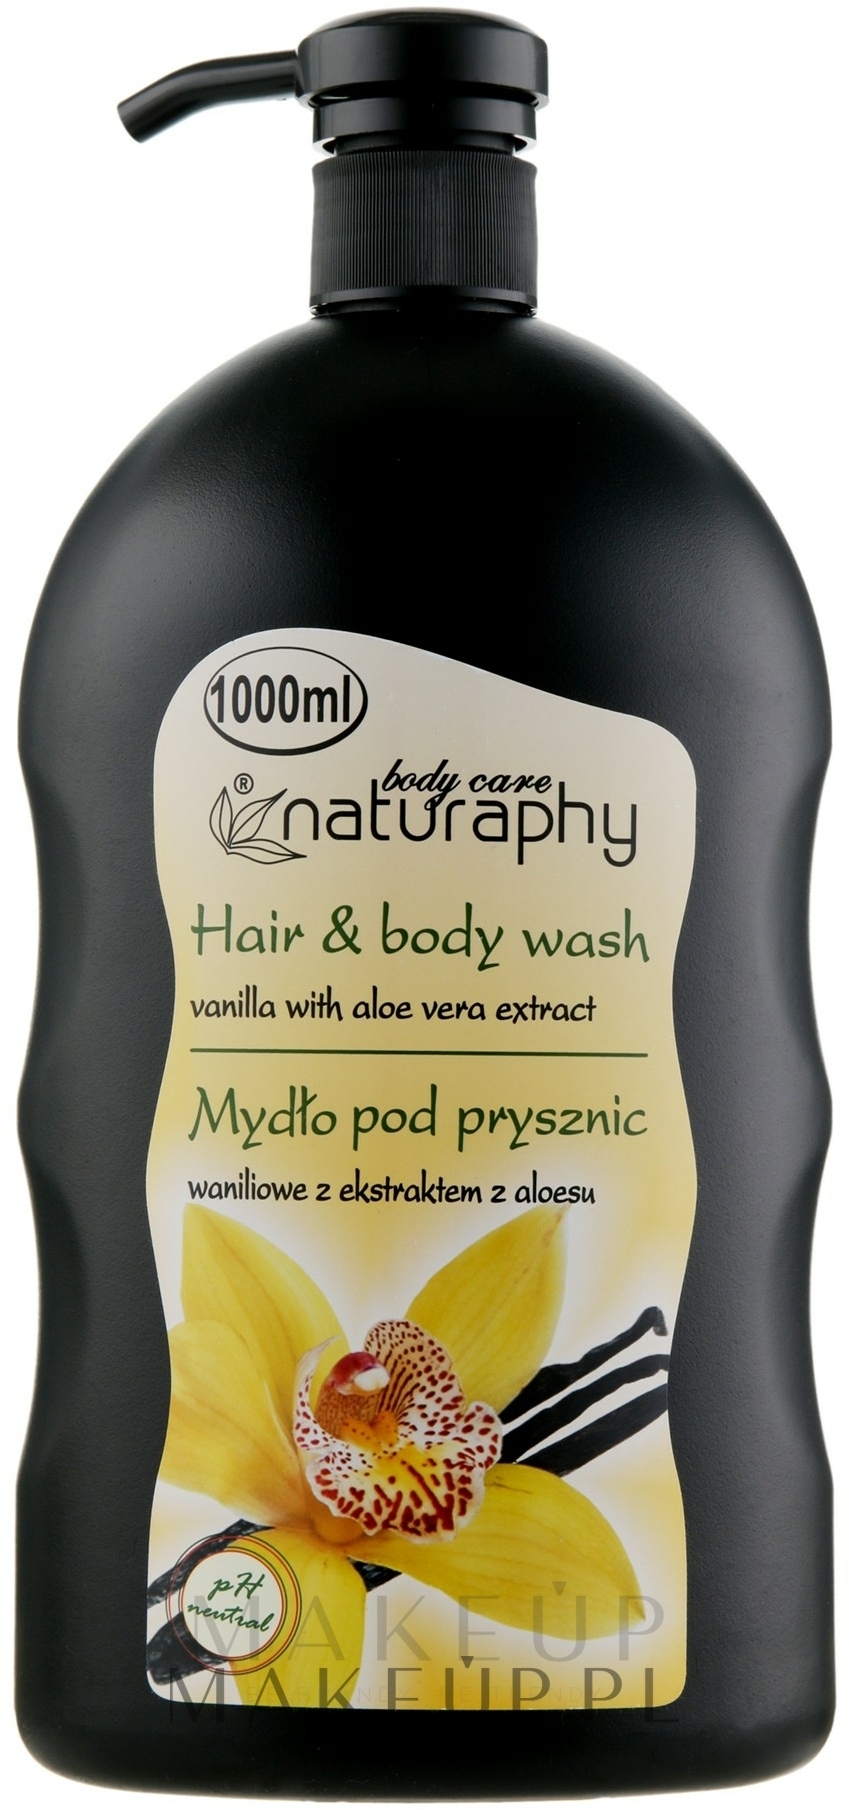 2in1 Shampoo und Duschgel mit Vanille und Aloe Vera-Extrakt - Naturaphy Hair & Body Wash — Foto 1000 ml